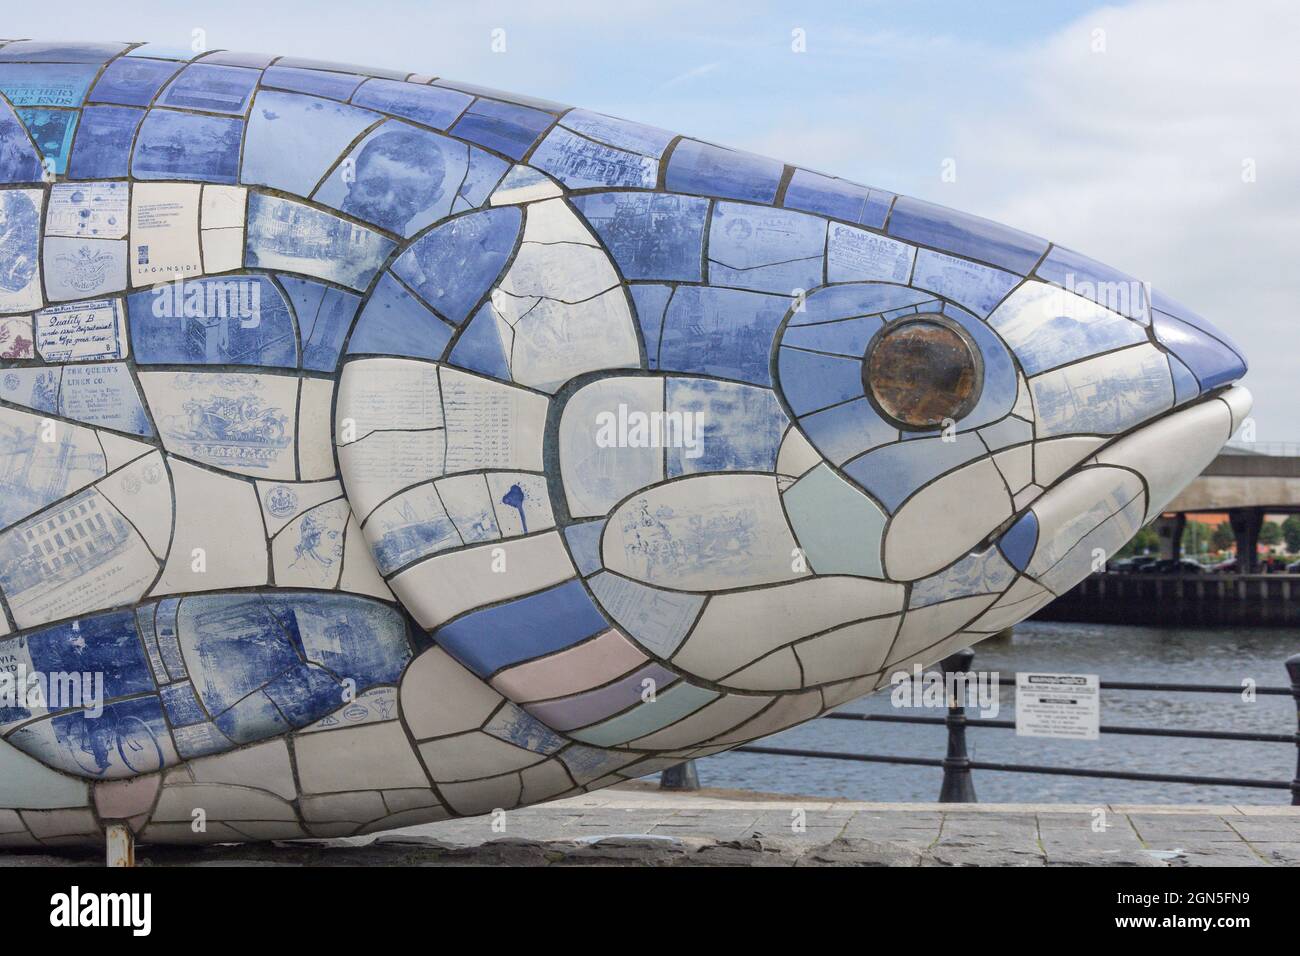 Il salmone della conoscenza (il grande pesce), Donegall Quay, Città di Belfast, Irlanda del Nord, Regno Unito Foto Stock